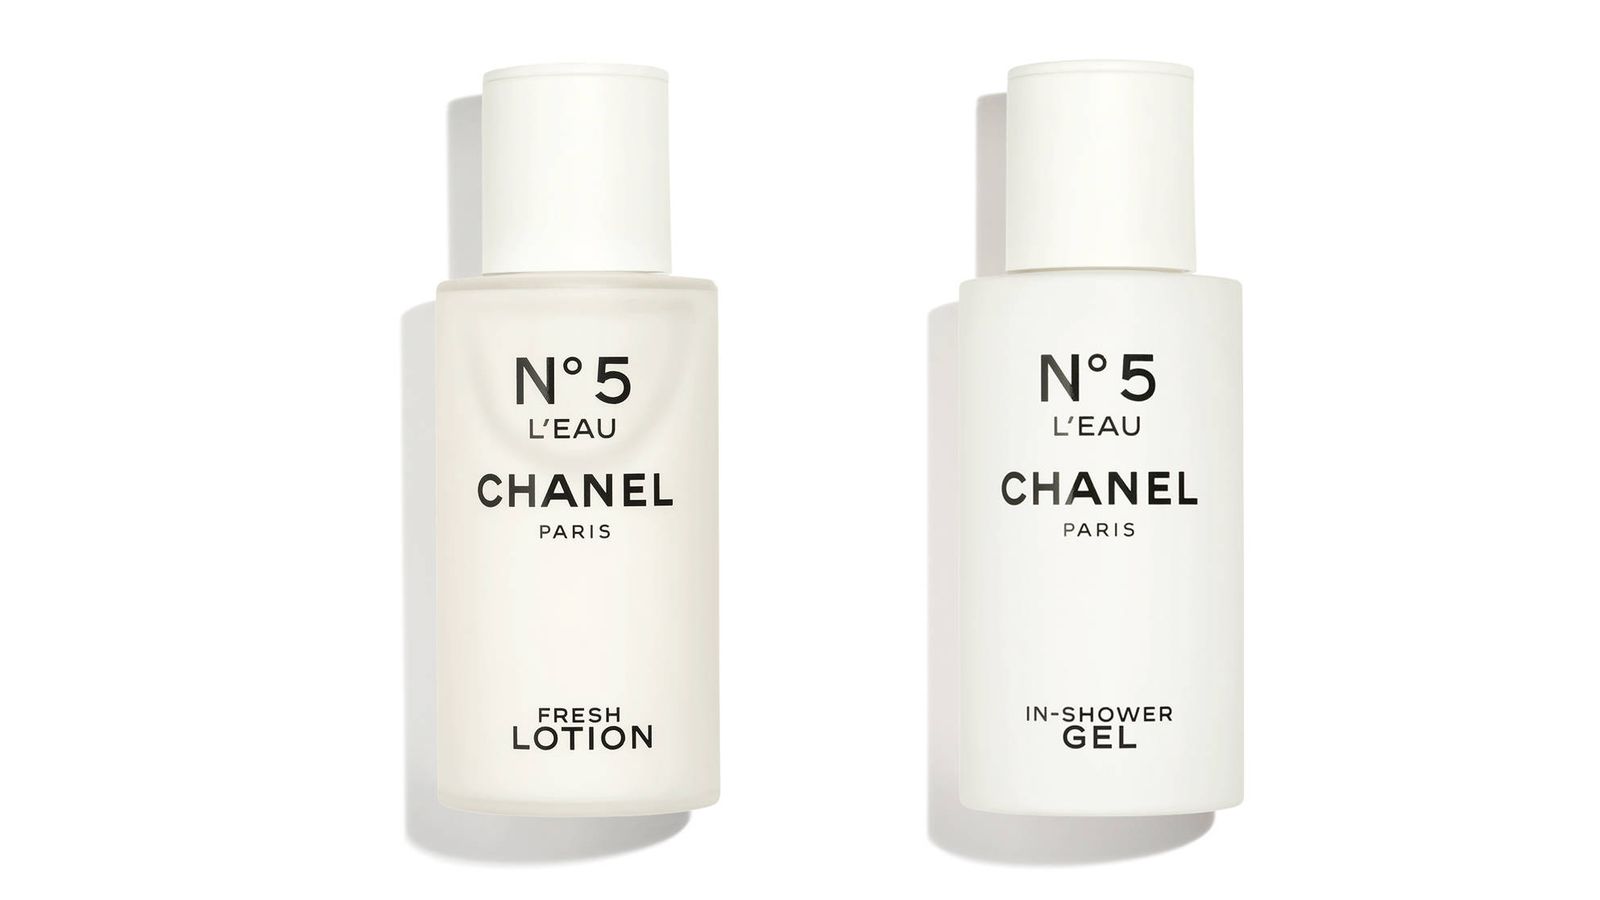 Un perfume, dos sensaciones: los nuevos tratamientos de Chanel Nº5 L'Eau